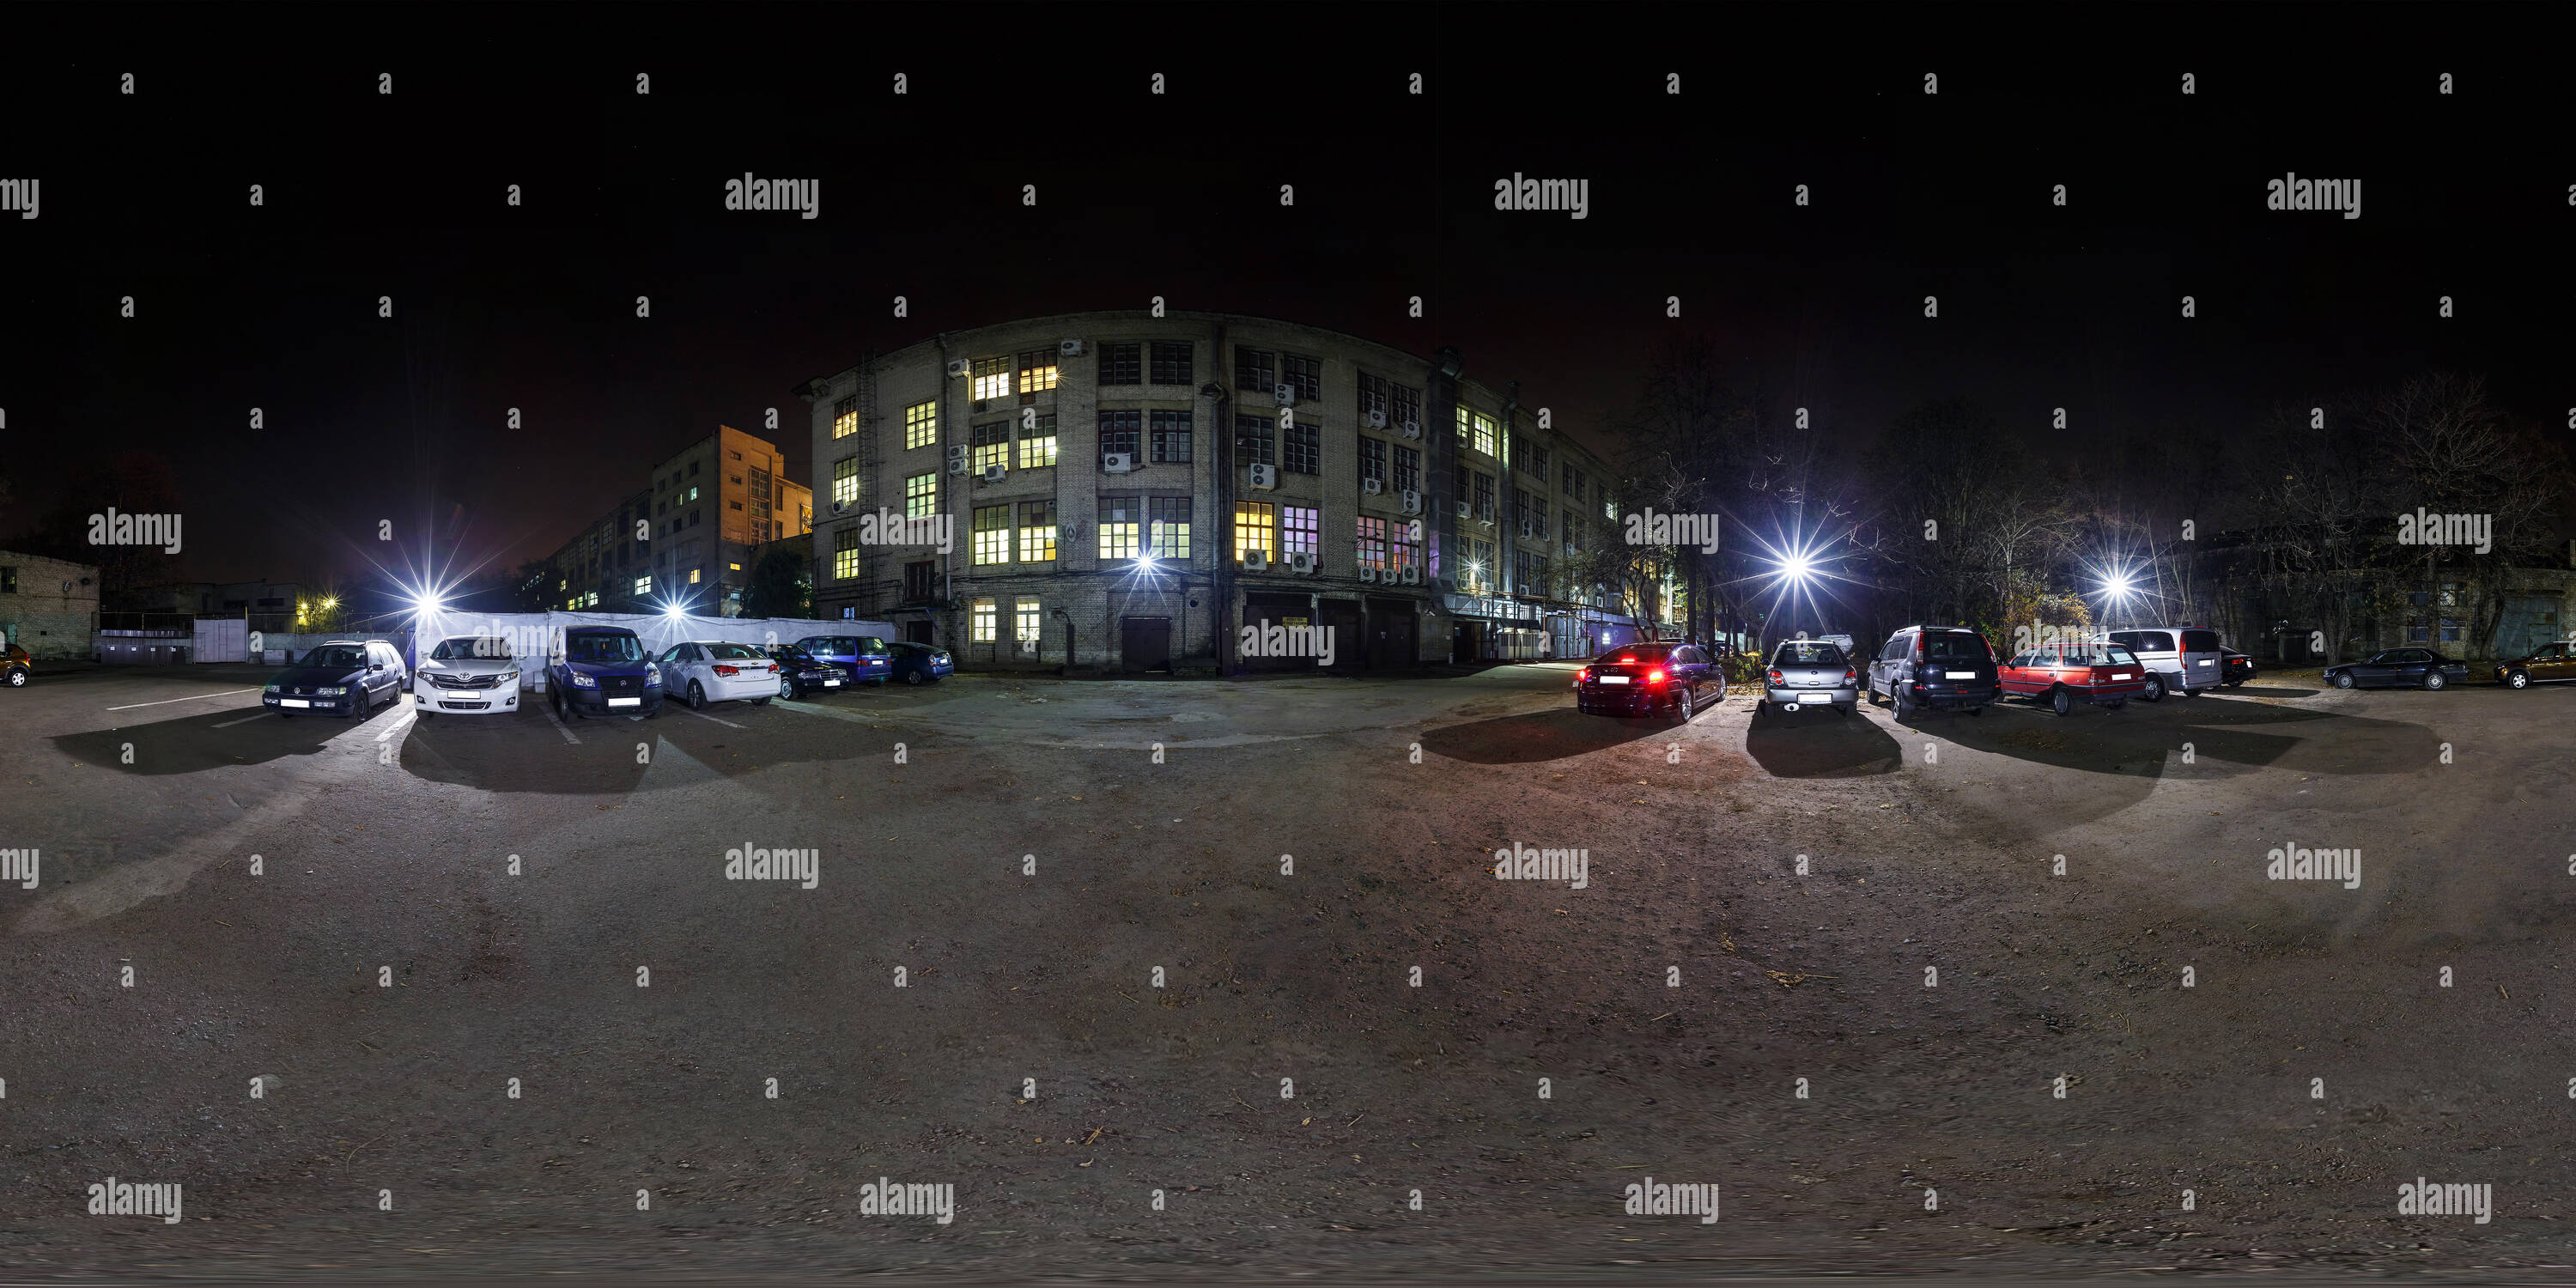 Vista panorámica en 360 grados de MINSK, BIELORRUSIA - Octubre 30, 2014: 360 vista panorámica de ángulo en la noche iluminada con coches de aparcamiento en el patio. 360 grados completos equirect perfecta